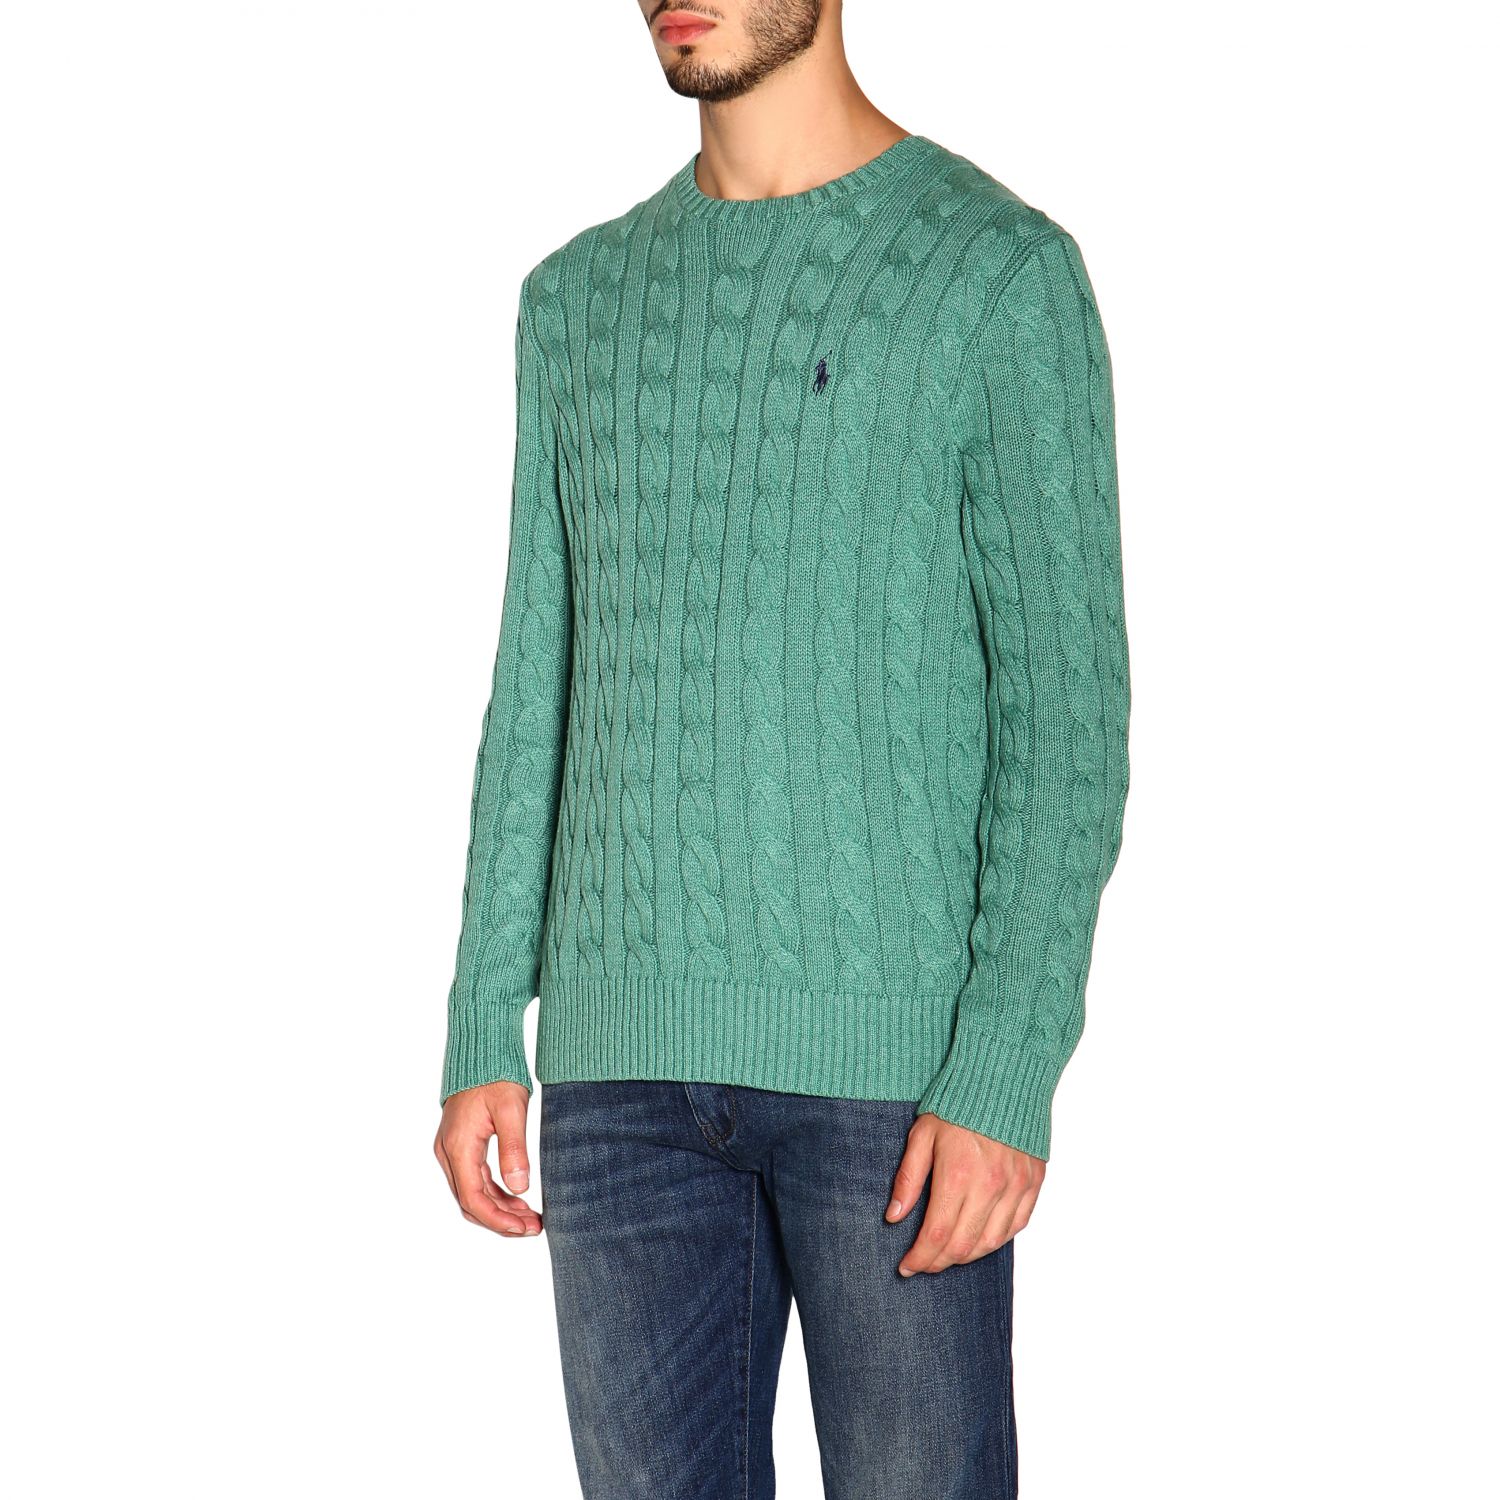 Polo Ralph Lauren Outlet: Sweater men | Sweater Polo Ralph Lauren Men ...